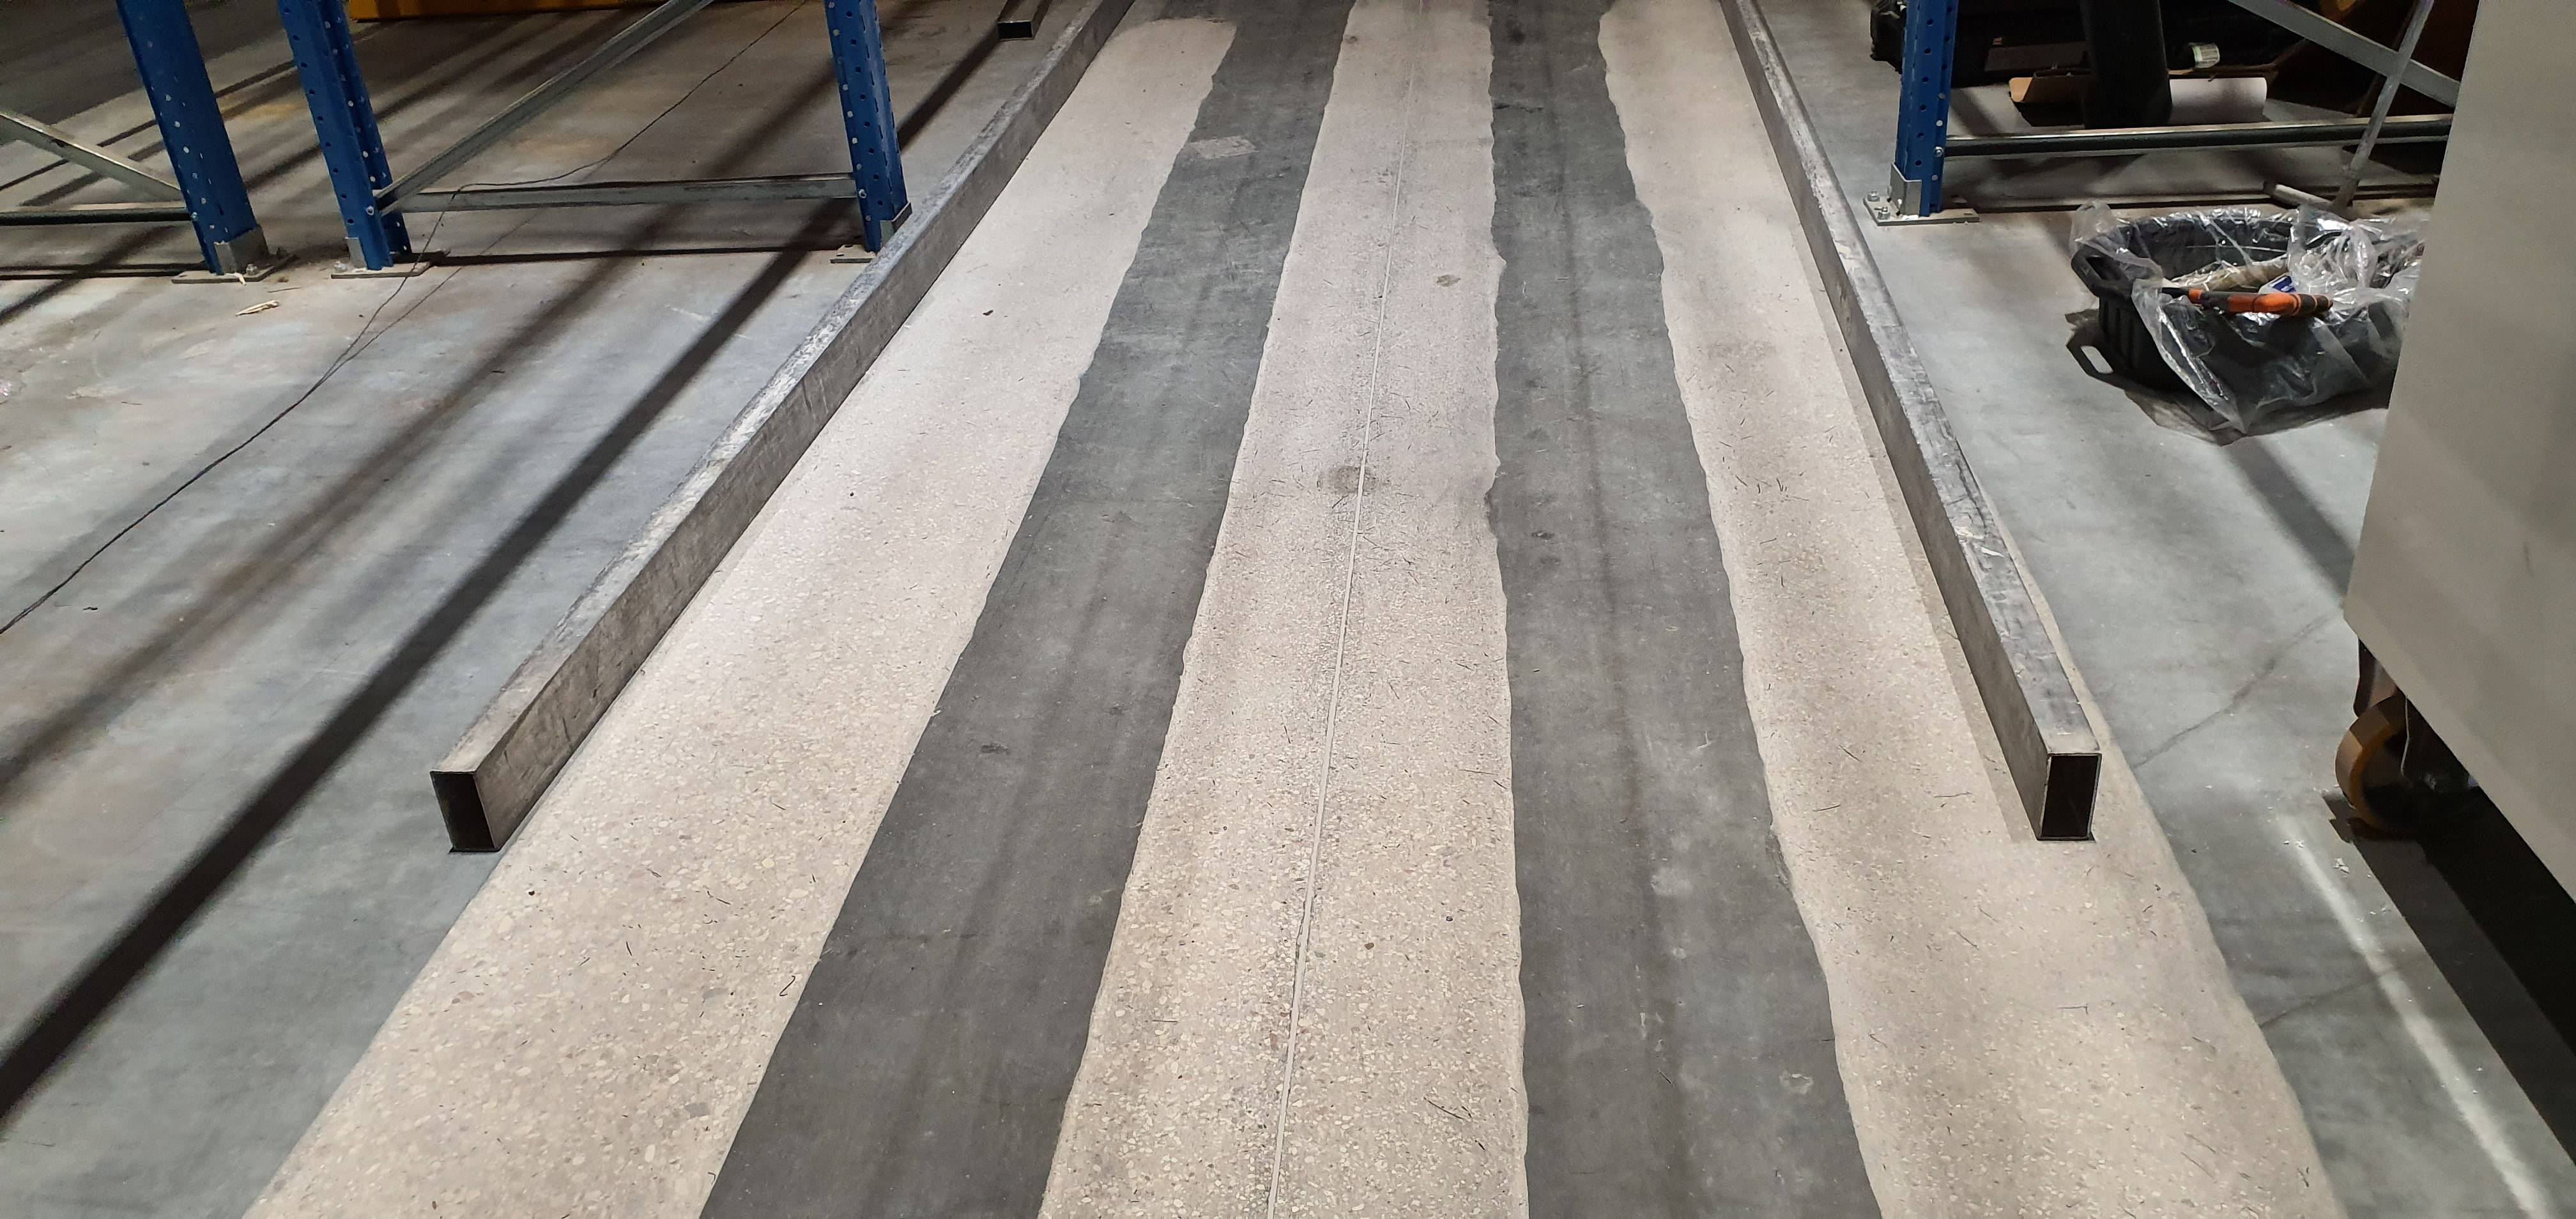 Ultra Posadzki - Dariusz Sanigórski Flooring Projects Management - badanie płaskości posadzki w bardzo wąskich korytarzach magazynu wysokiego składowania VNA